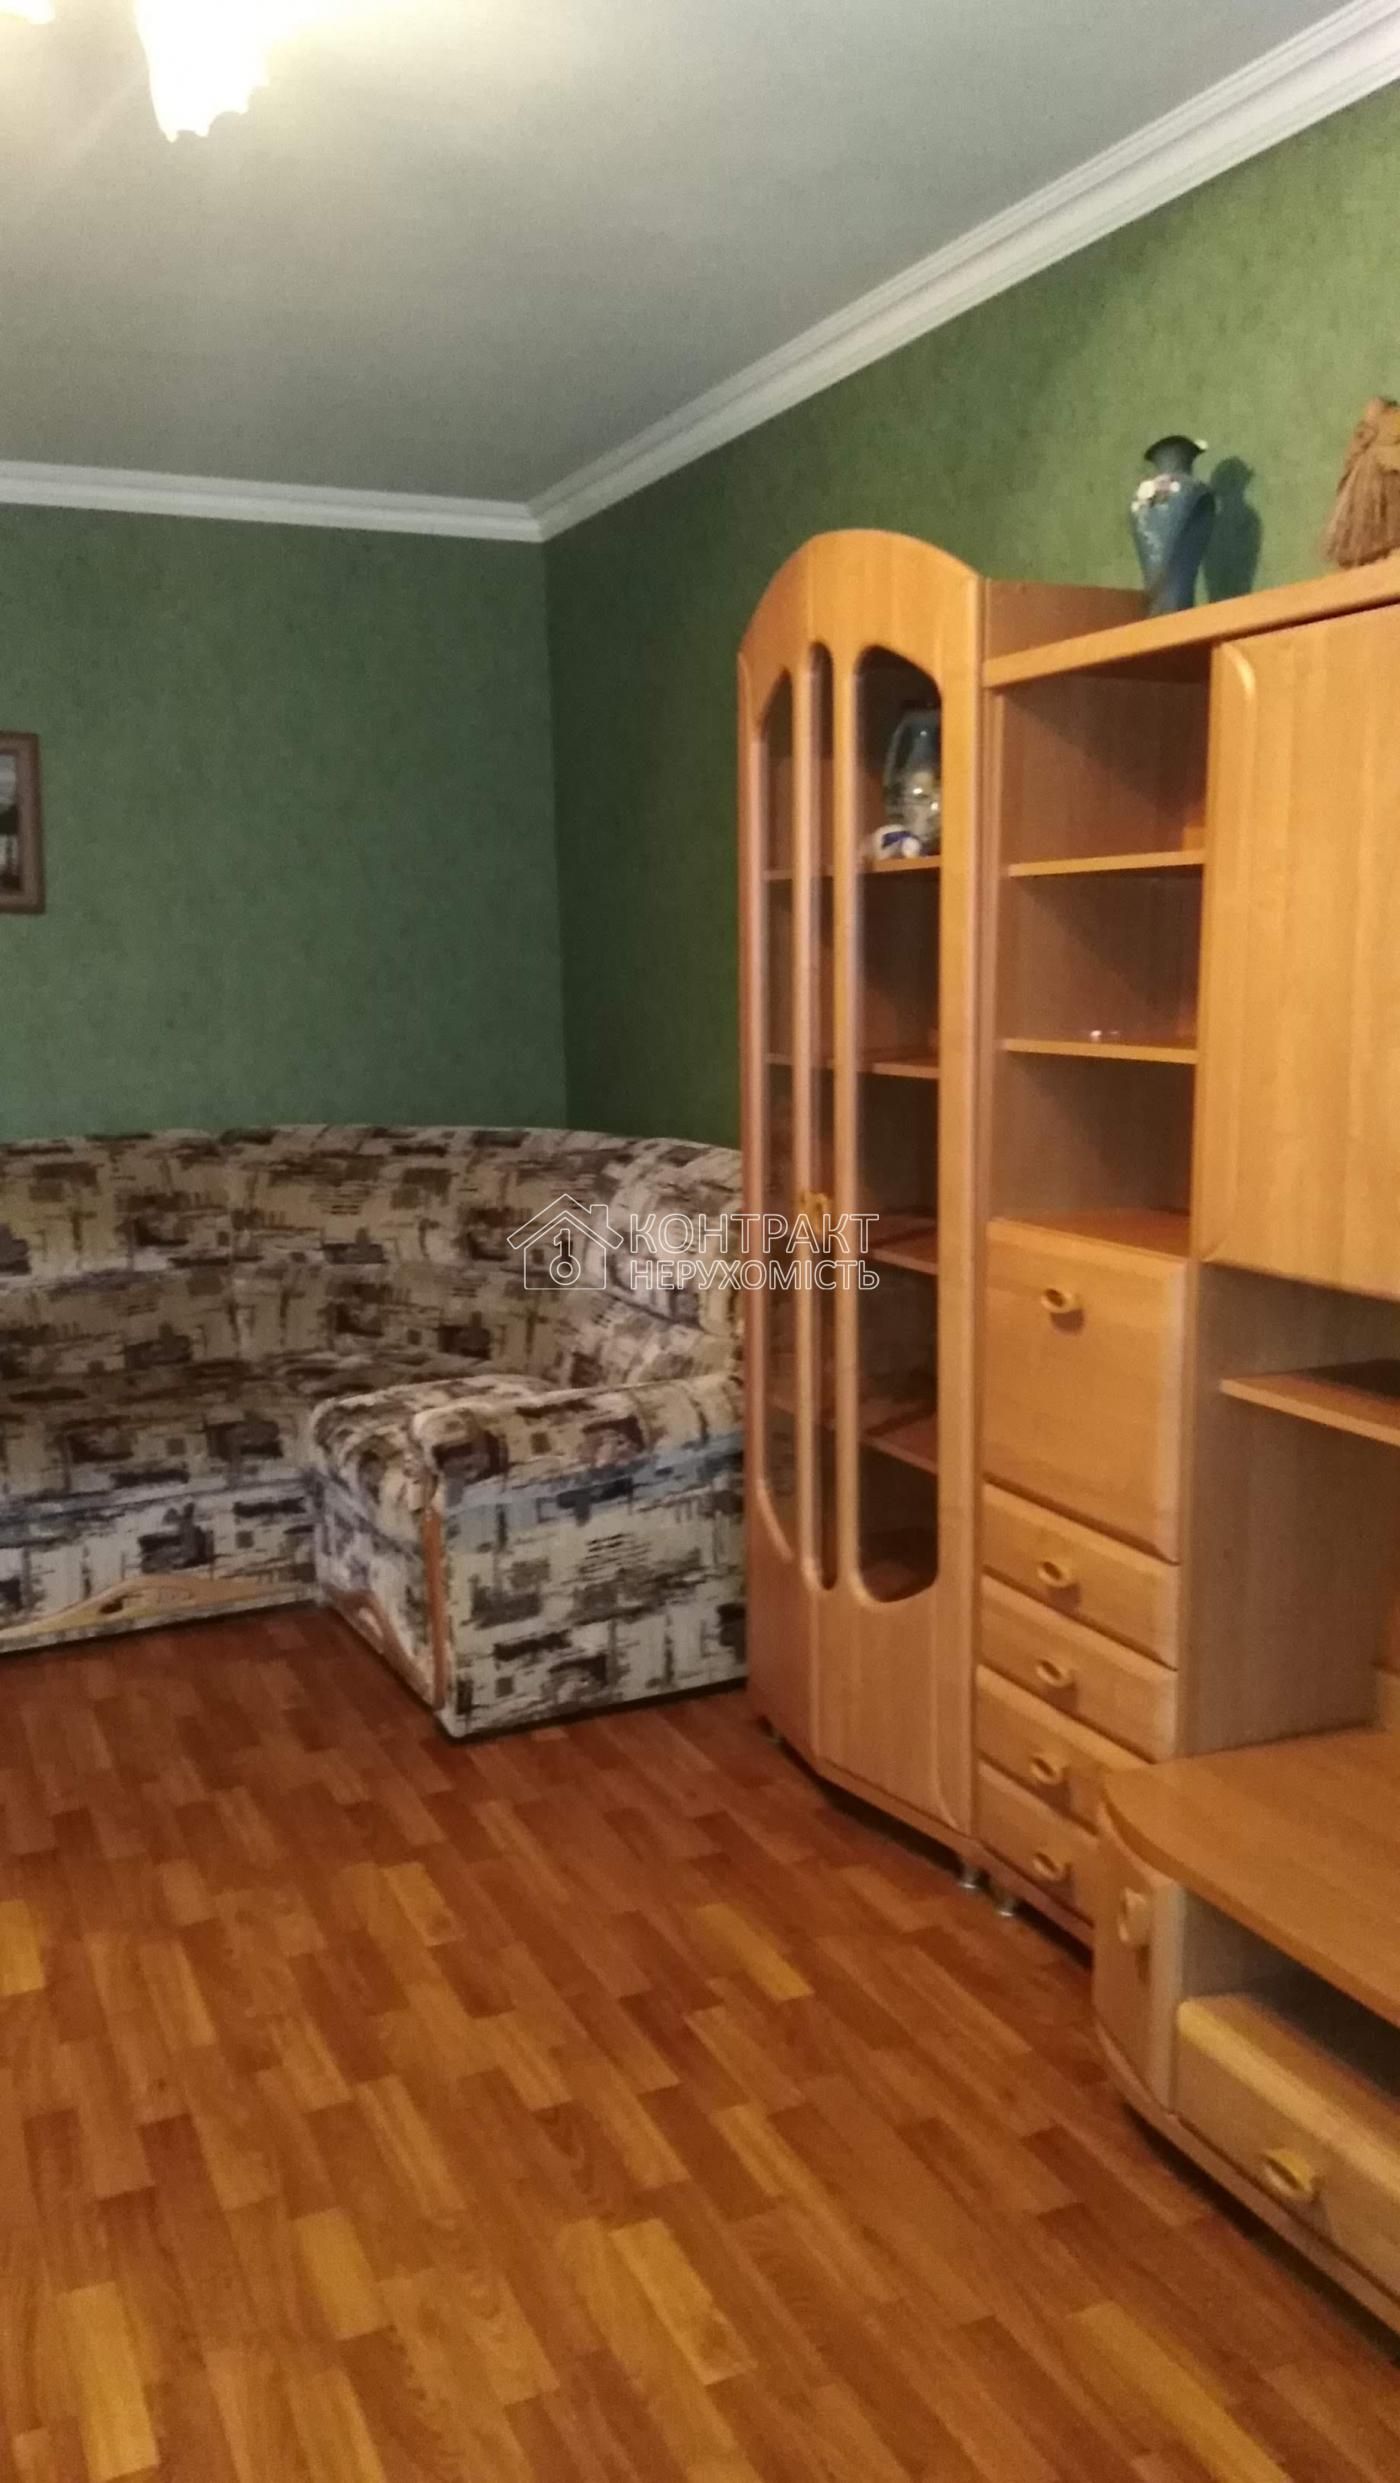 продам 3 кімнатну квартиру в М.Харків м. Героїв праці